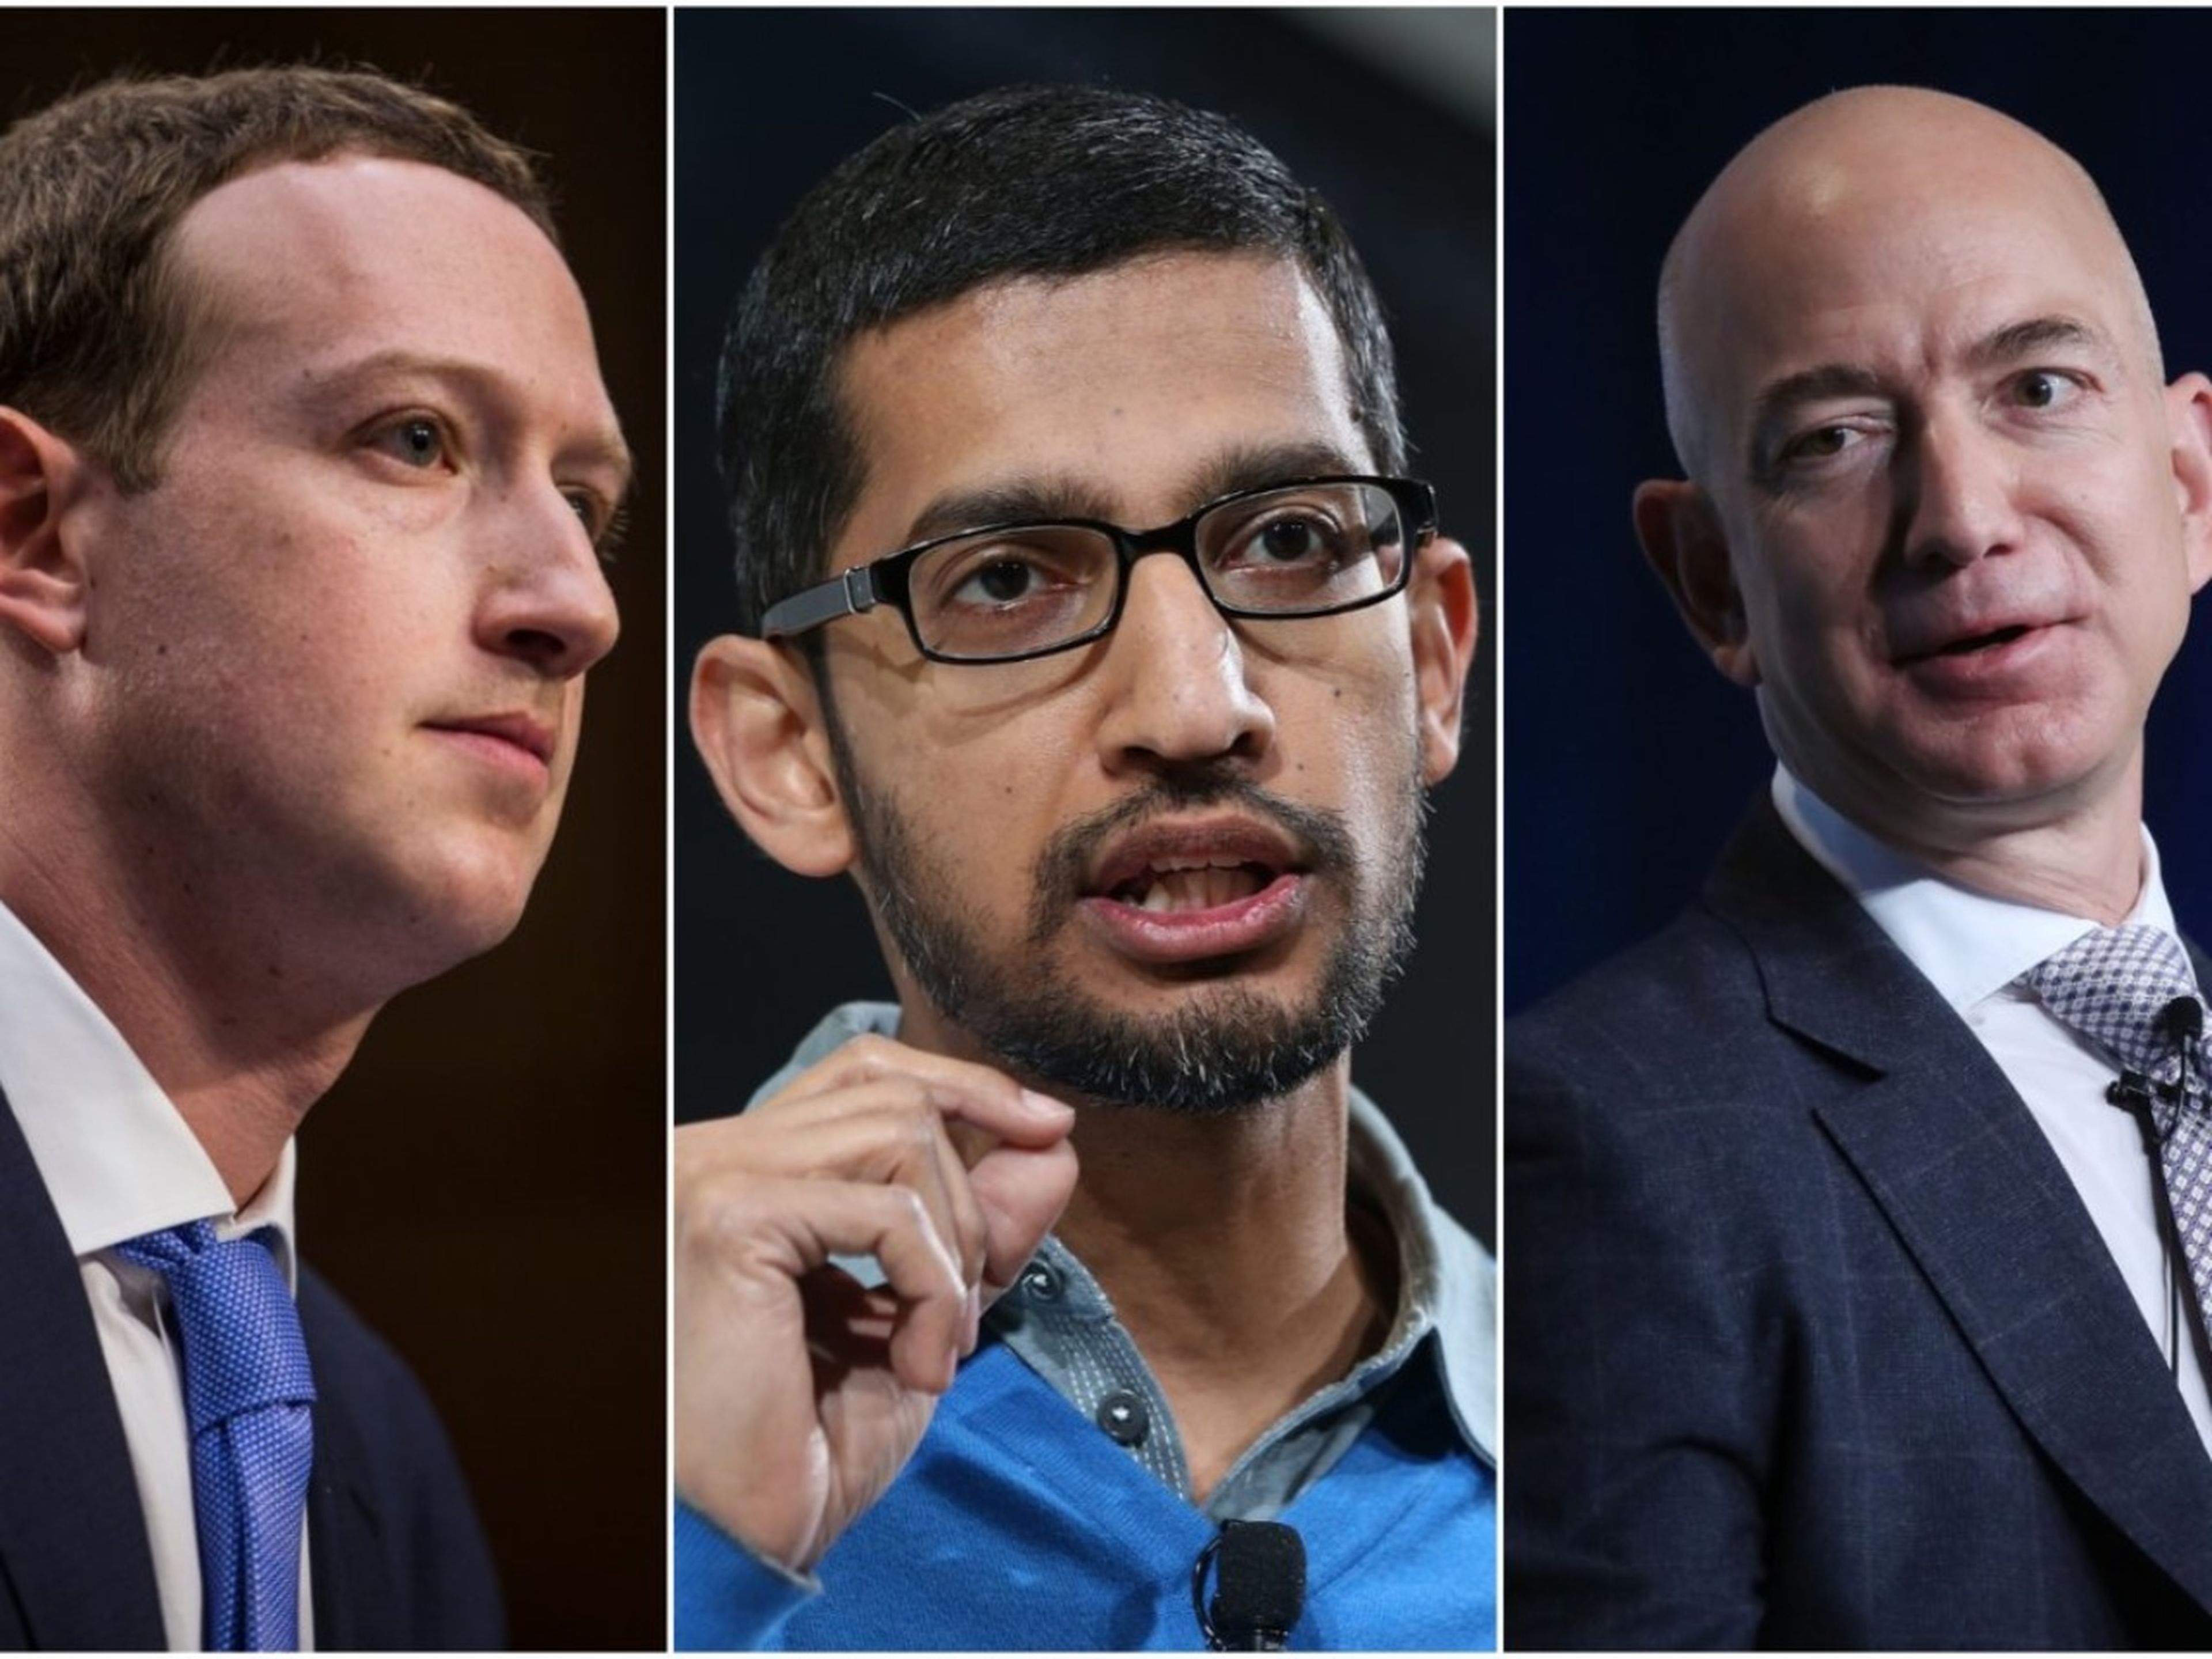 Mark Zuckerberg, Sundar Pichai y Jeff Bezos, los CEO de Facebook, Google y Amazon